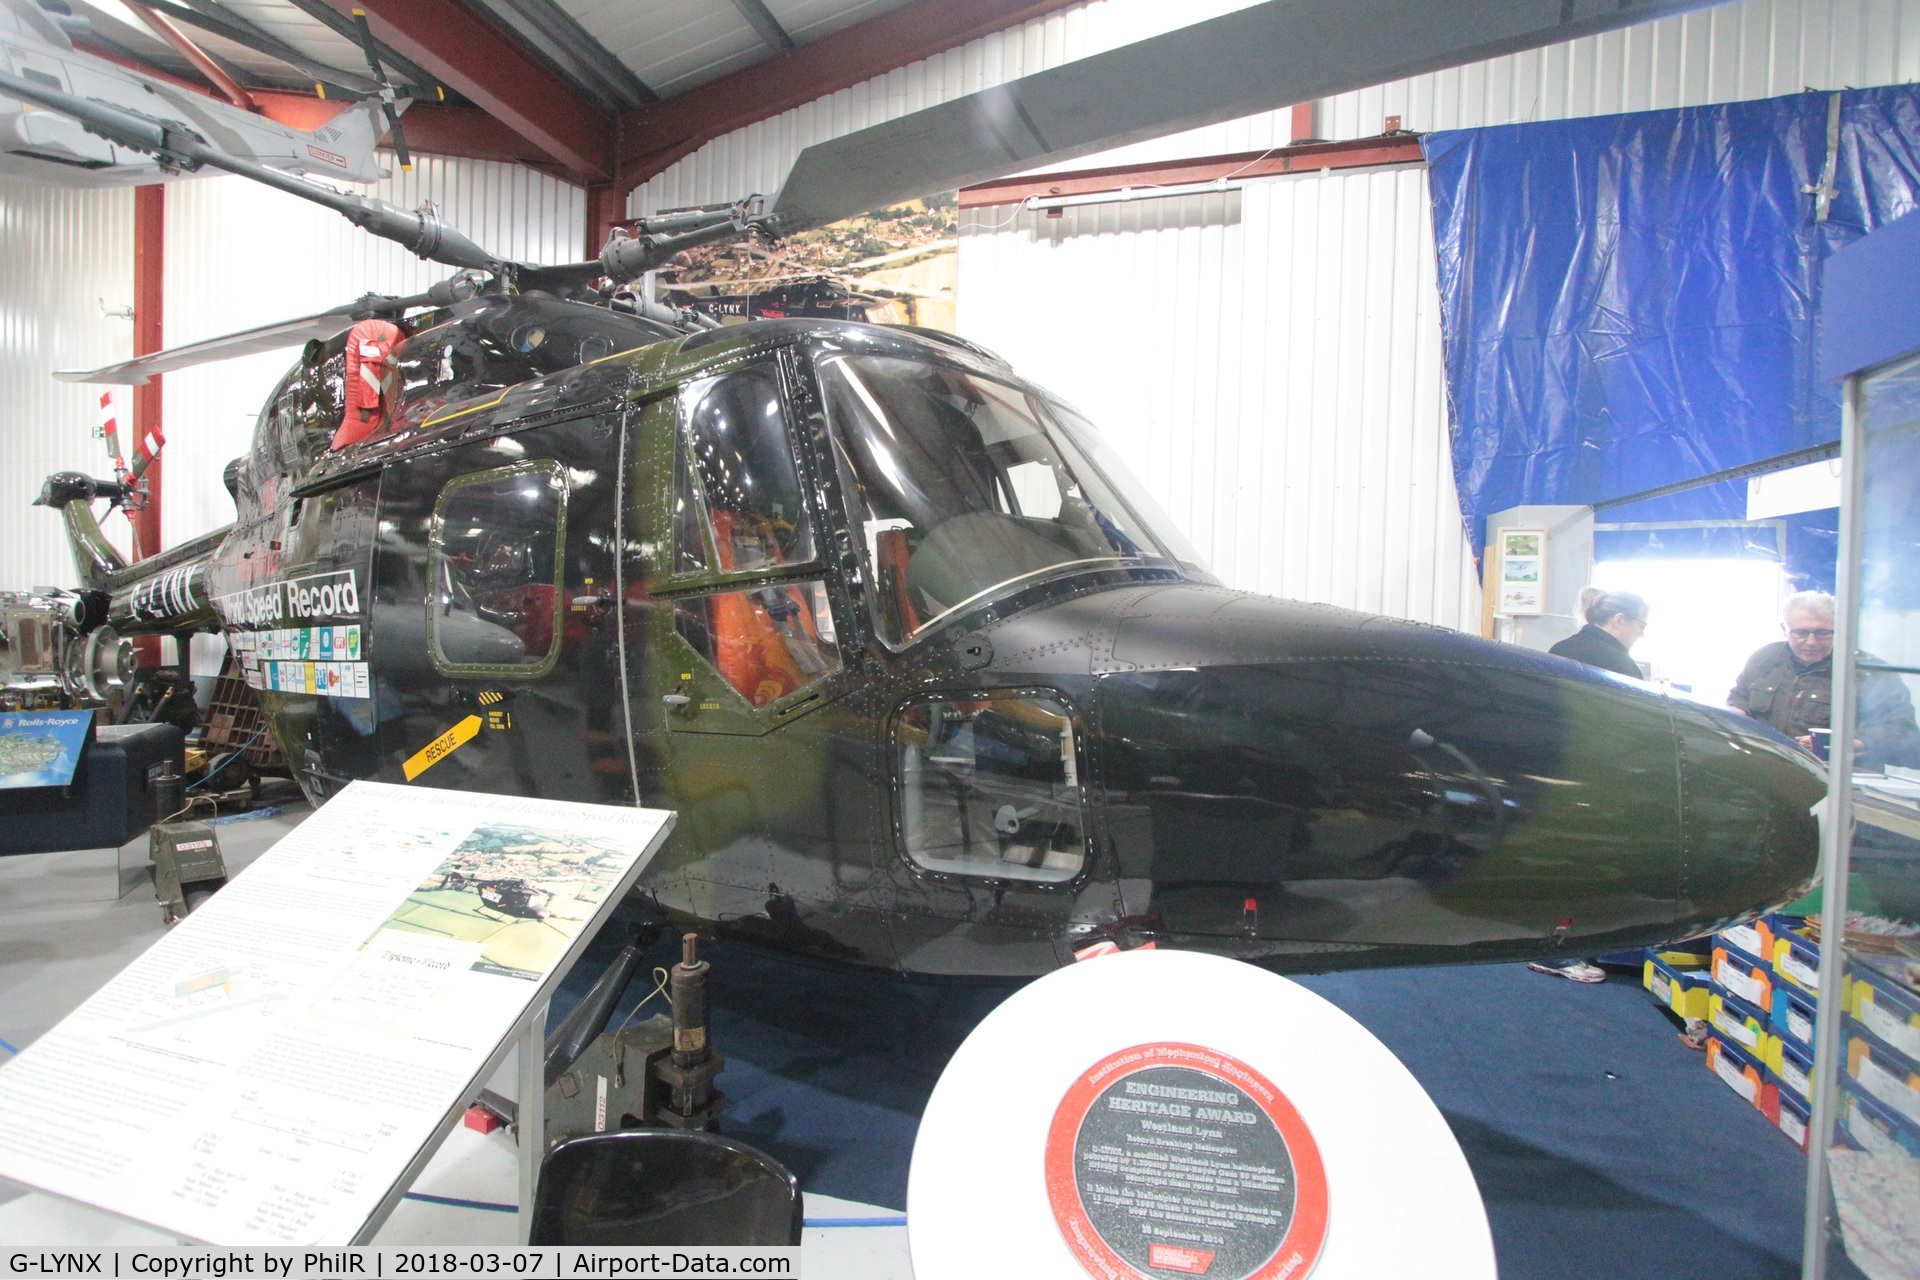 G-LYNX, Westland Lynx 800 C/N 102, G-LYNX 1979 Westland Lynx 800 Helicopter Museum